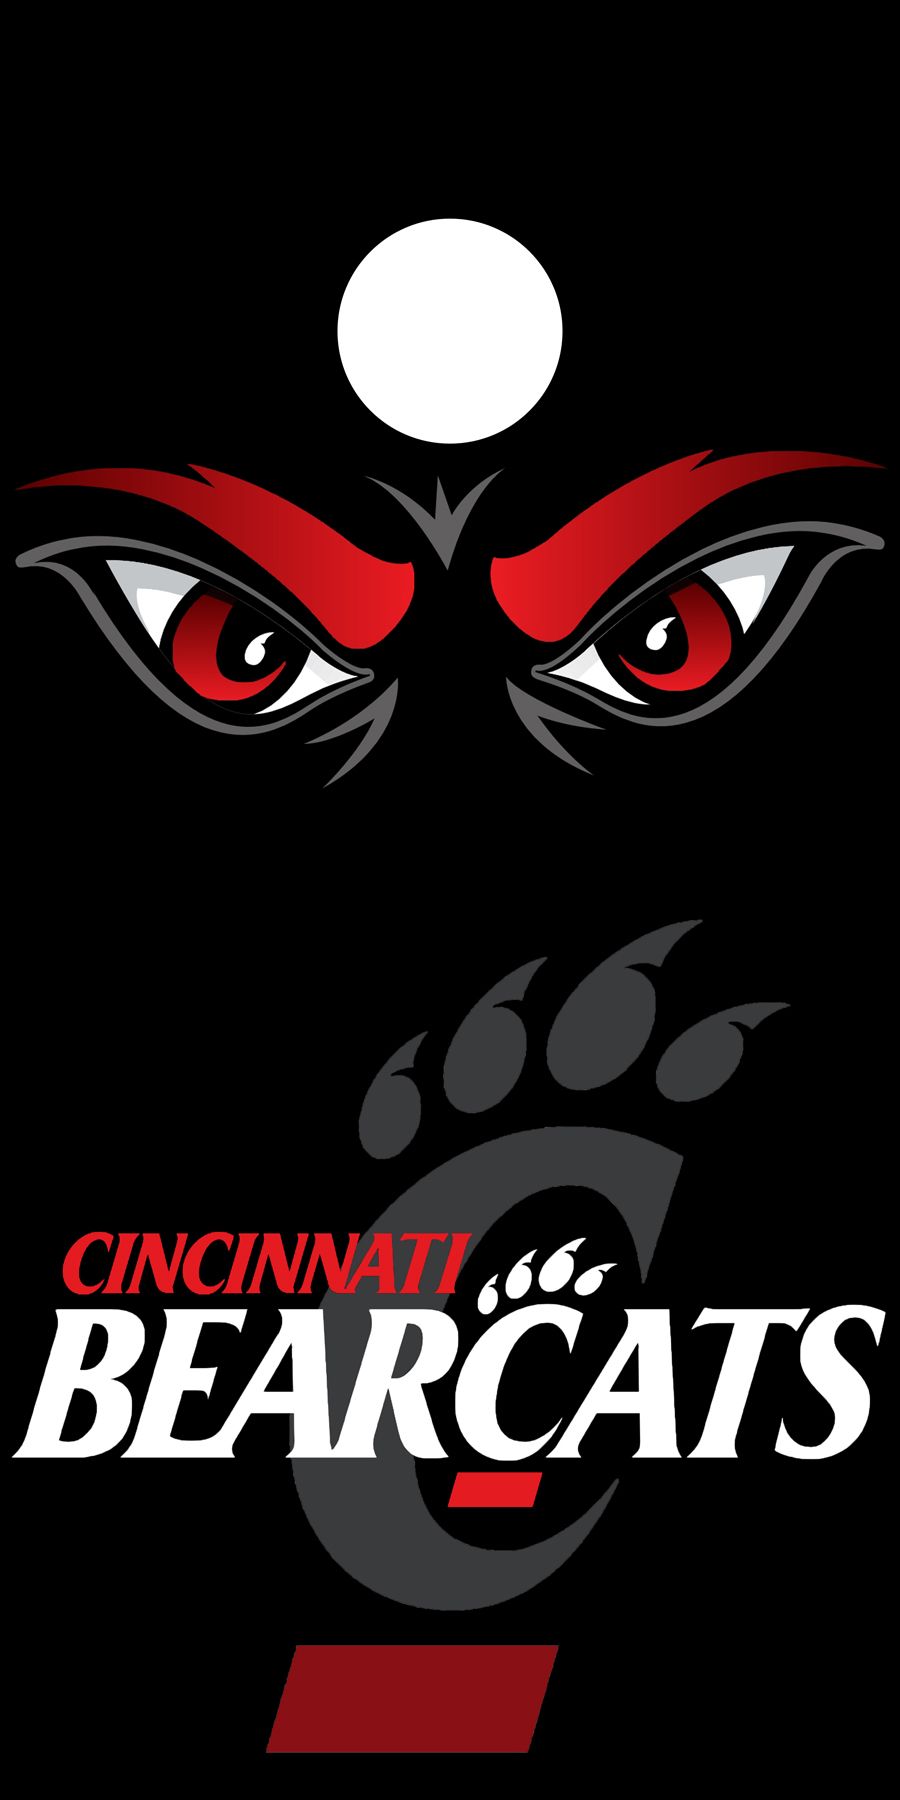 Cincinnati Bearcats. Cincinnati bearcats, Bearcats, Cincinnati football